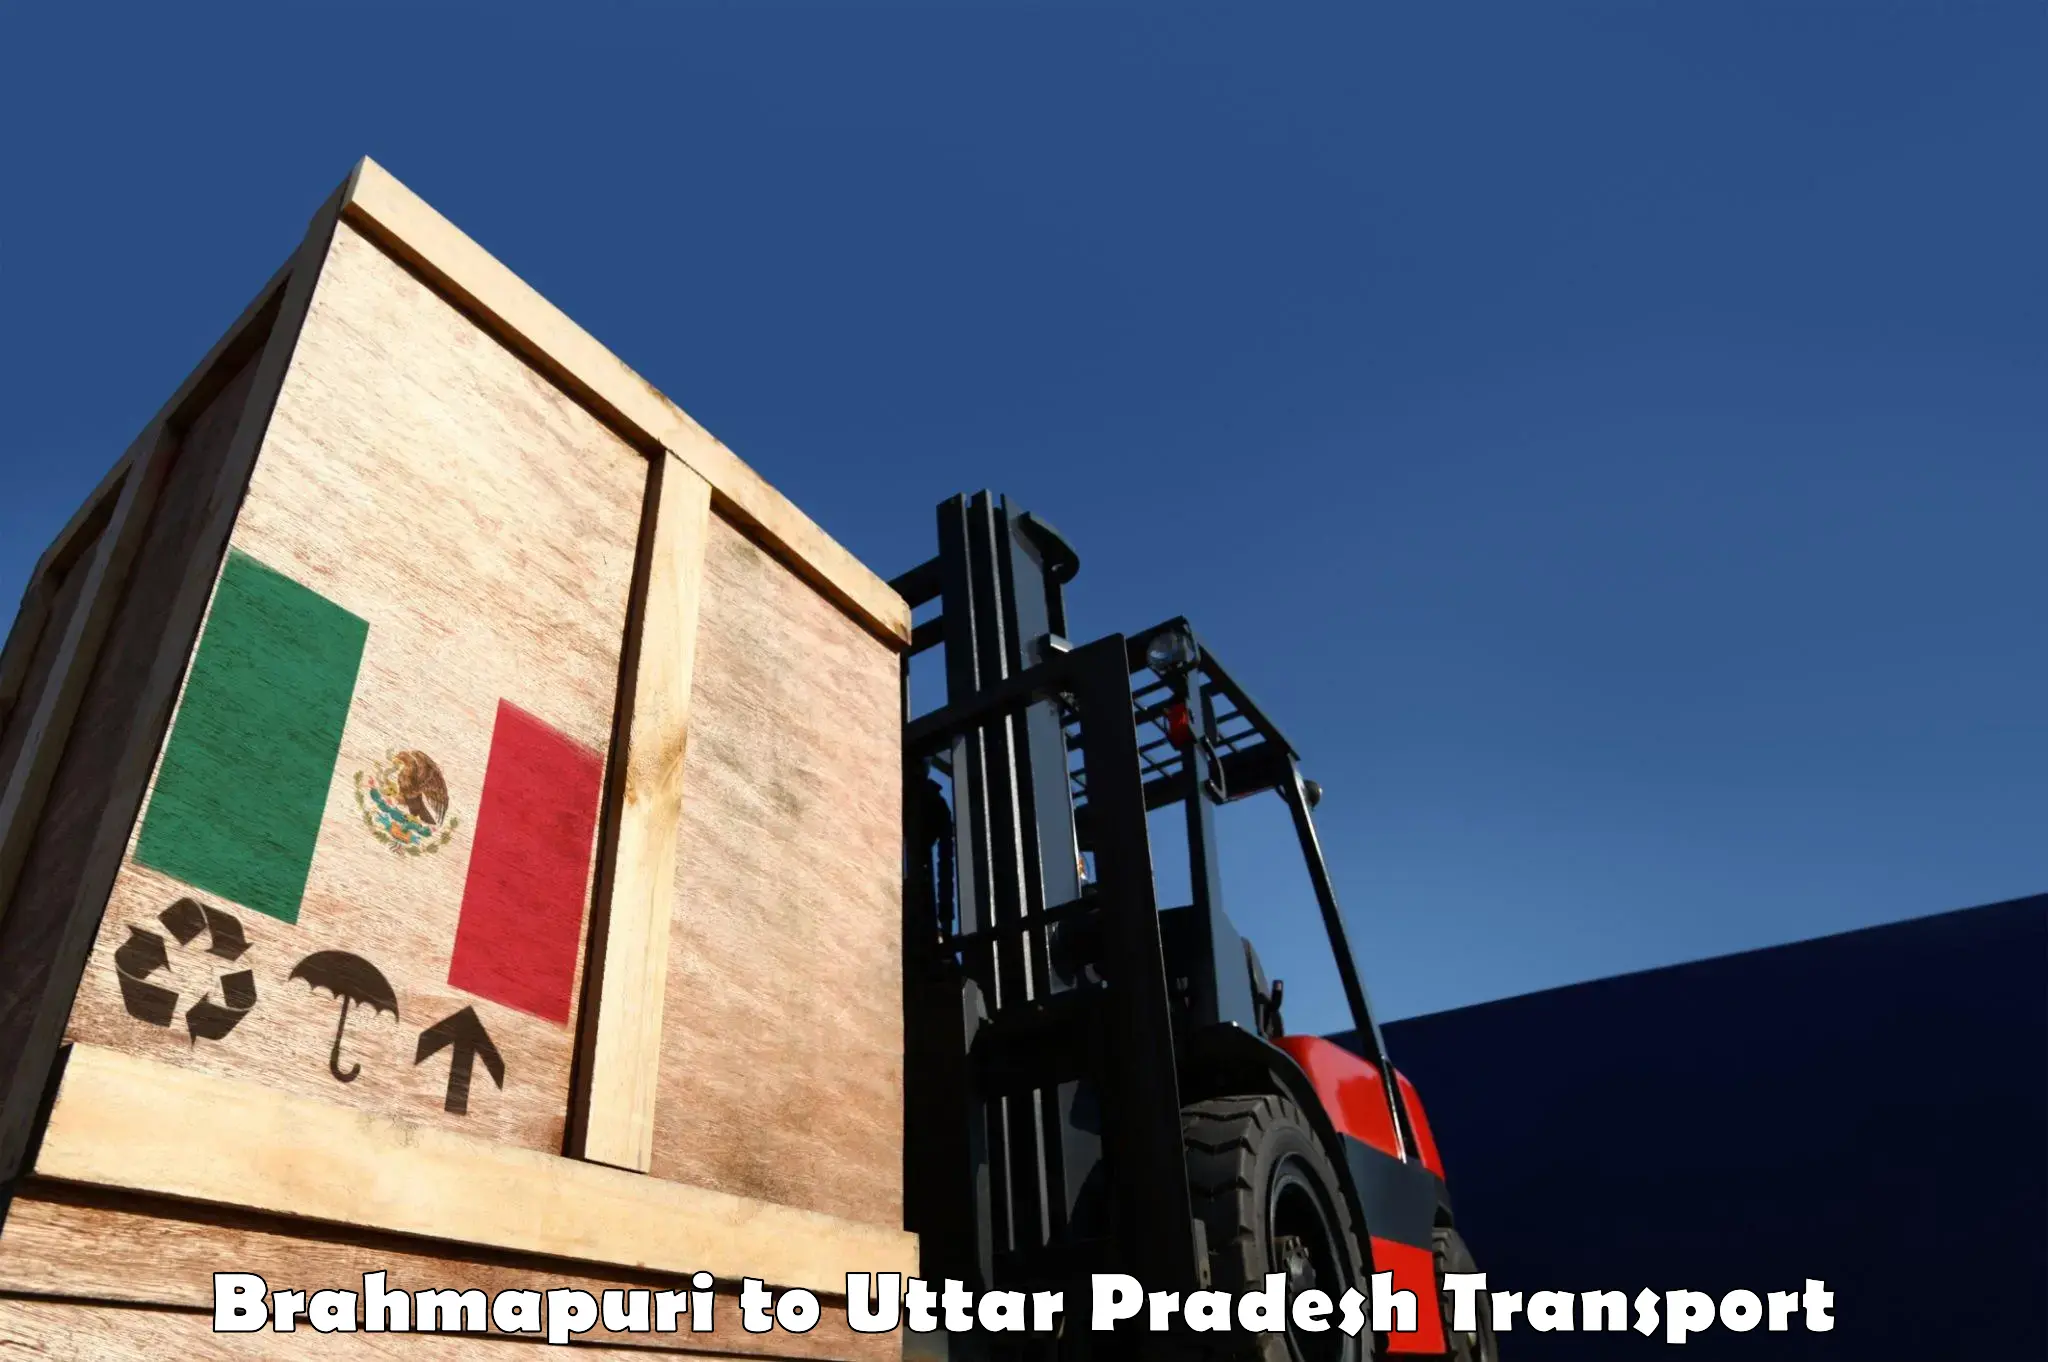 Lorry transport service Brahmapuri to Konch